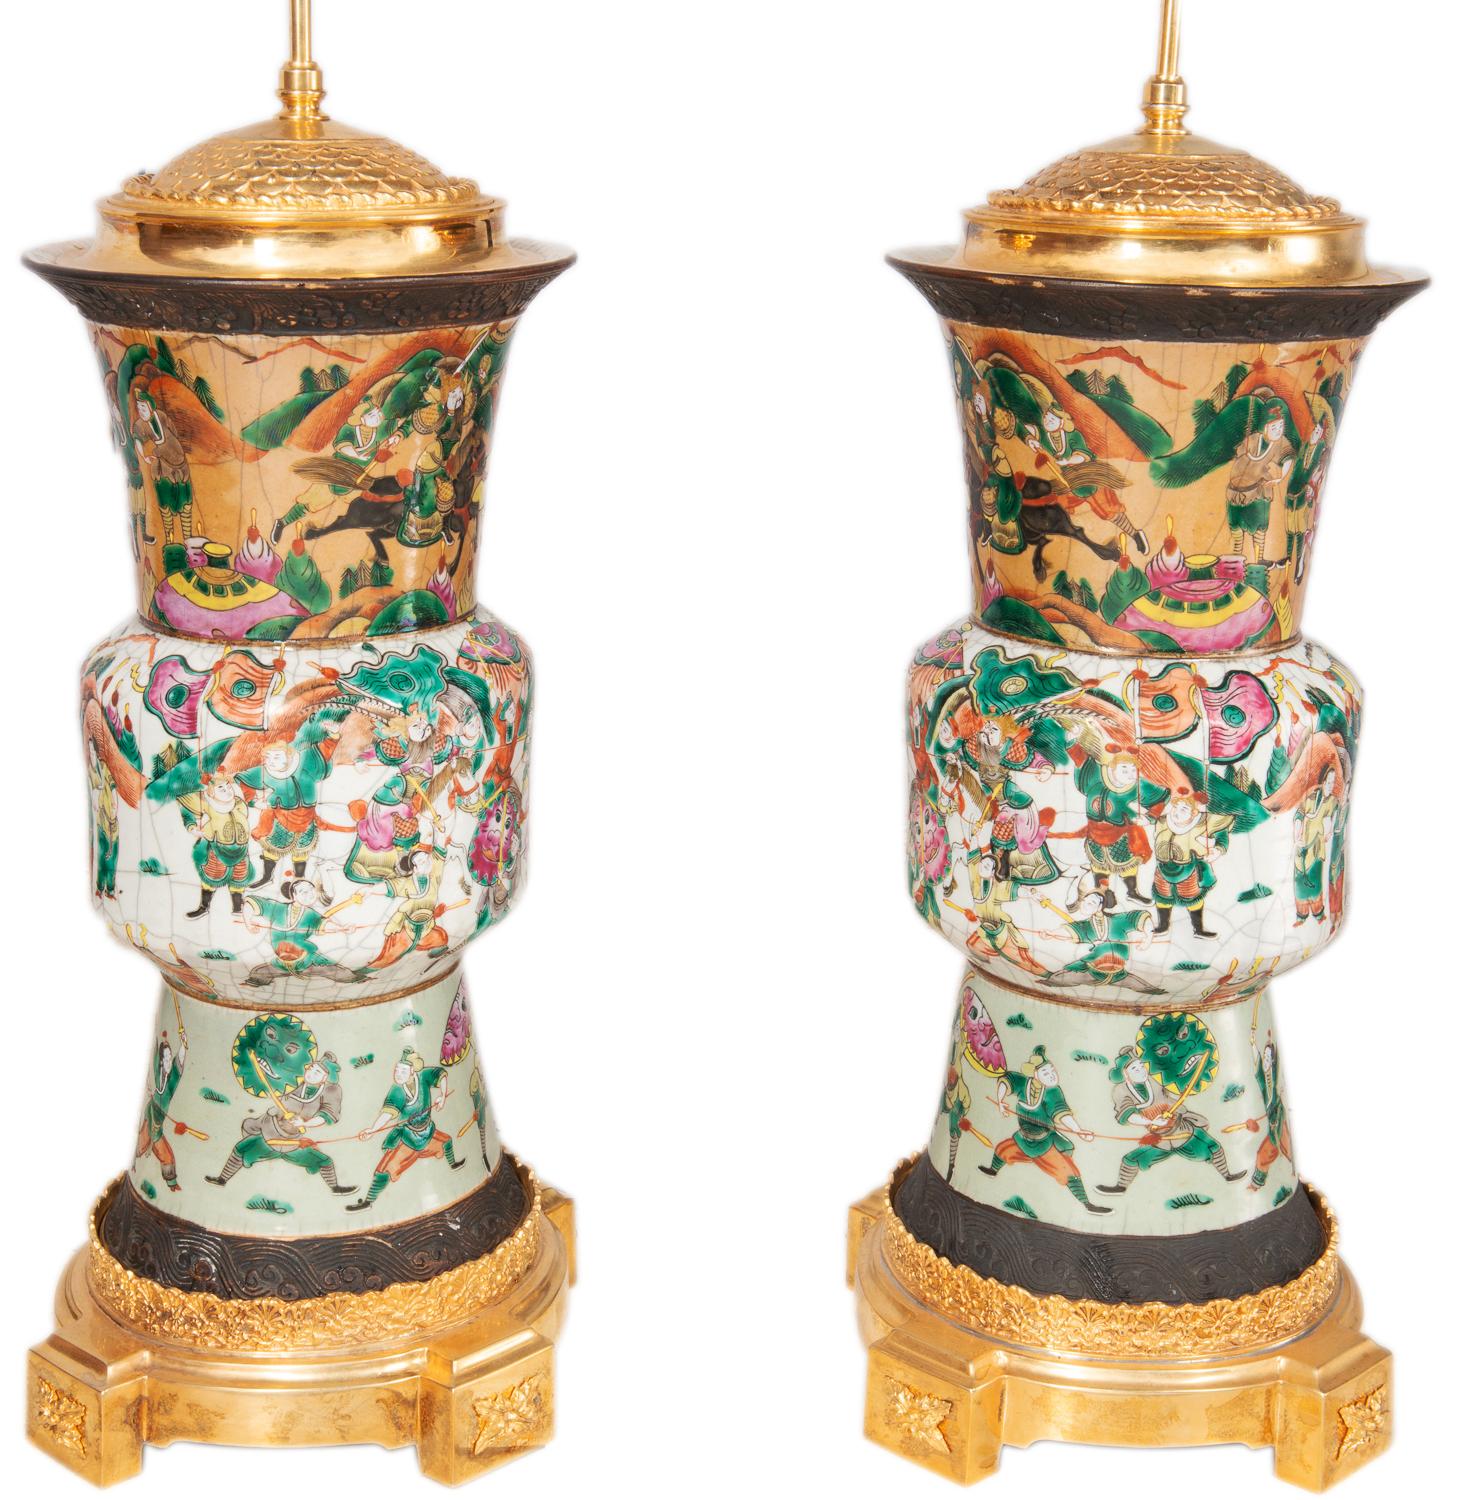 Paire de vases/lampes chinoises en faïence craquelée de la fin du XIXe siècle. Chacune avec diverses scènes de bataille avec des guerriers à cheval, montées avec de merveilleux couvercles et bases en bronze doré.